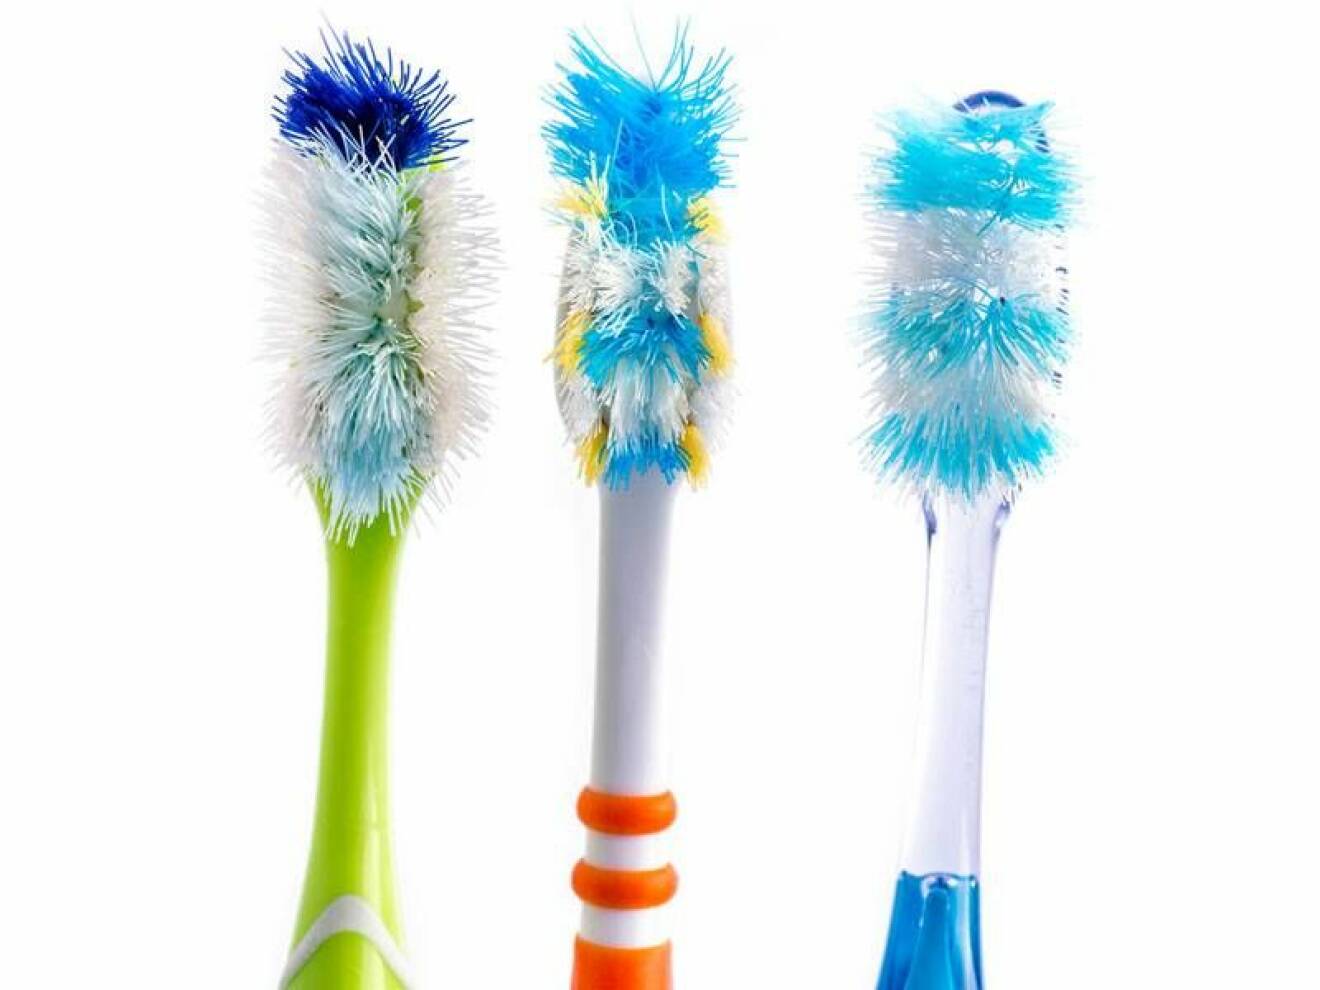 Tandborstar ska du så klart byta ut med jämna mellanrum, men du behöver inte slänga dem! Använd dem till att skrubba på svåråtkomliga ställen med, som runt kranar, eller för att rengöra dina smycken.